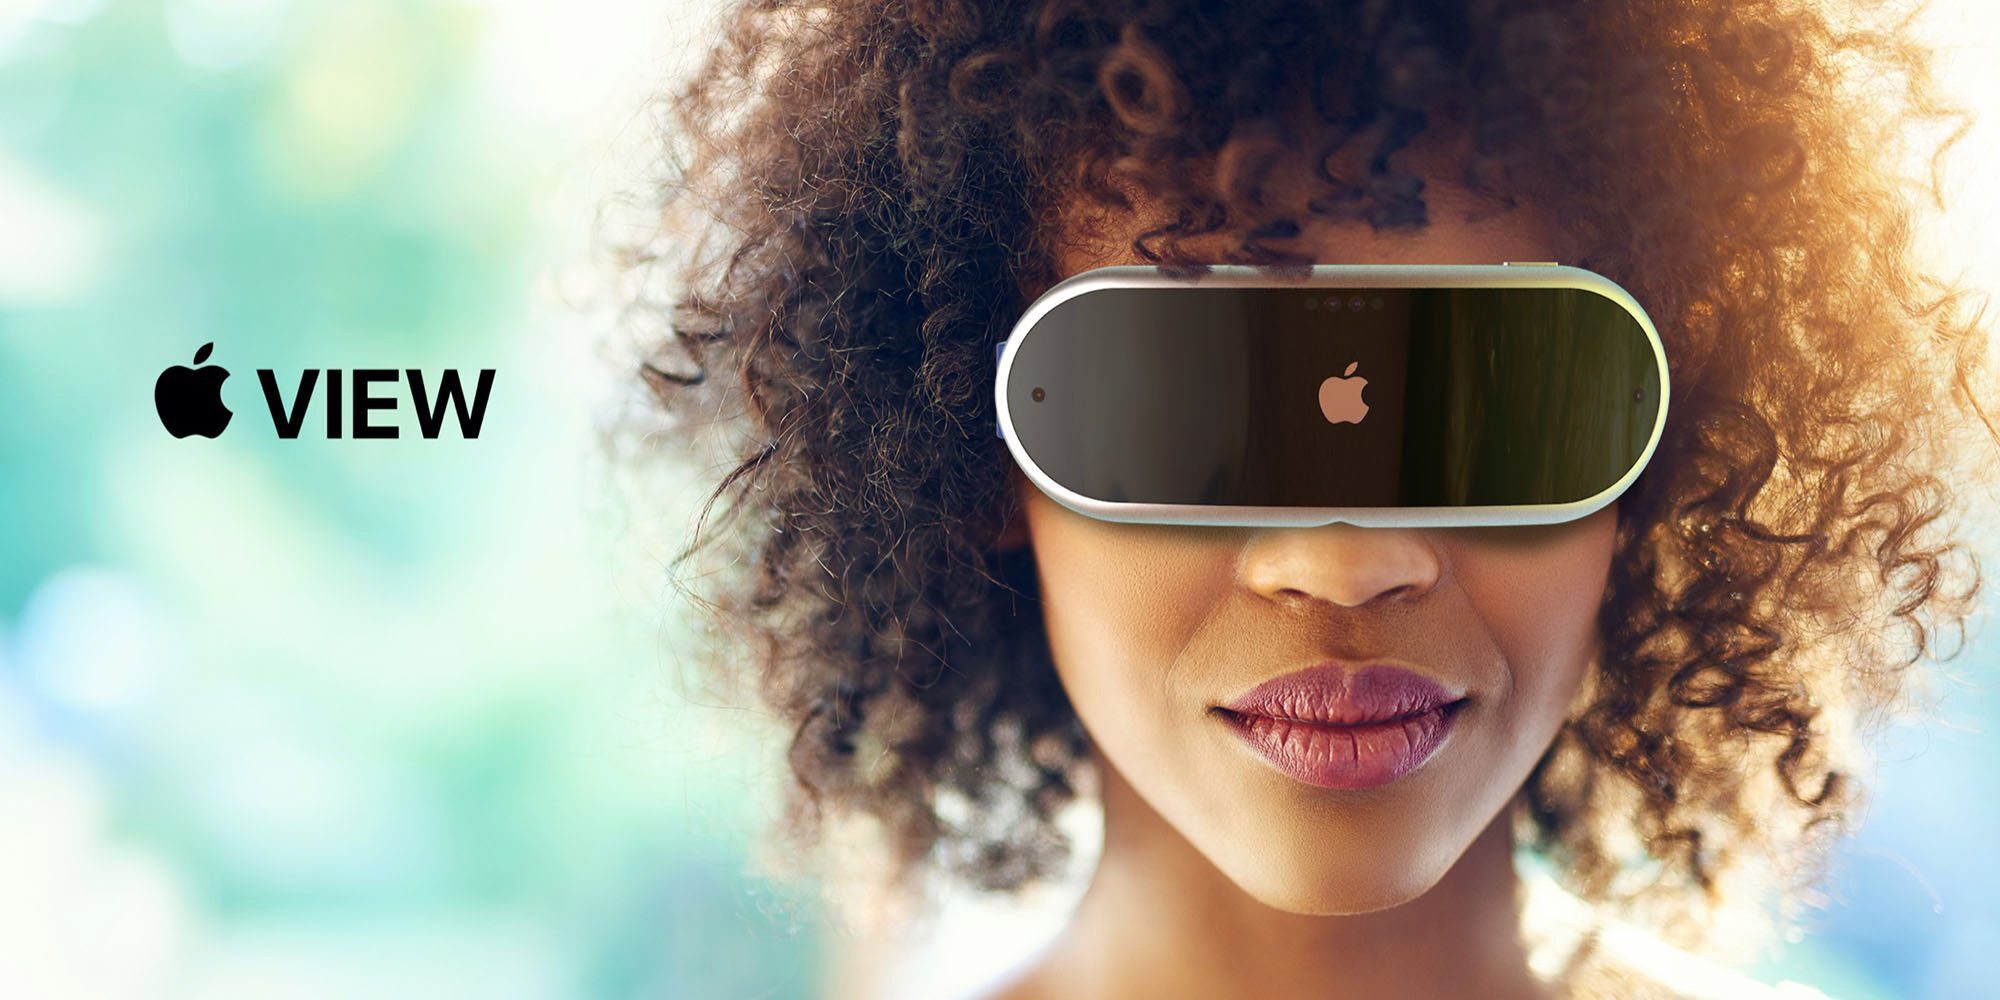 Глава Apple оценил идею жизни в виртуальной реальности